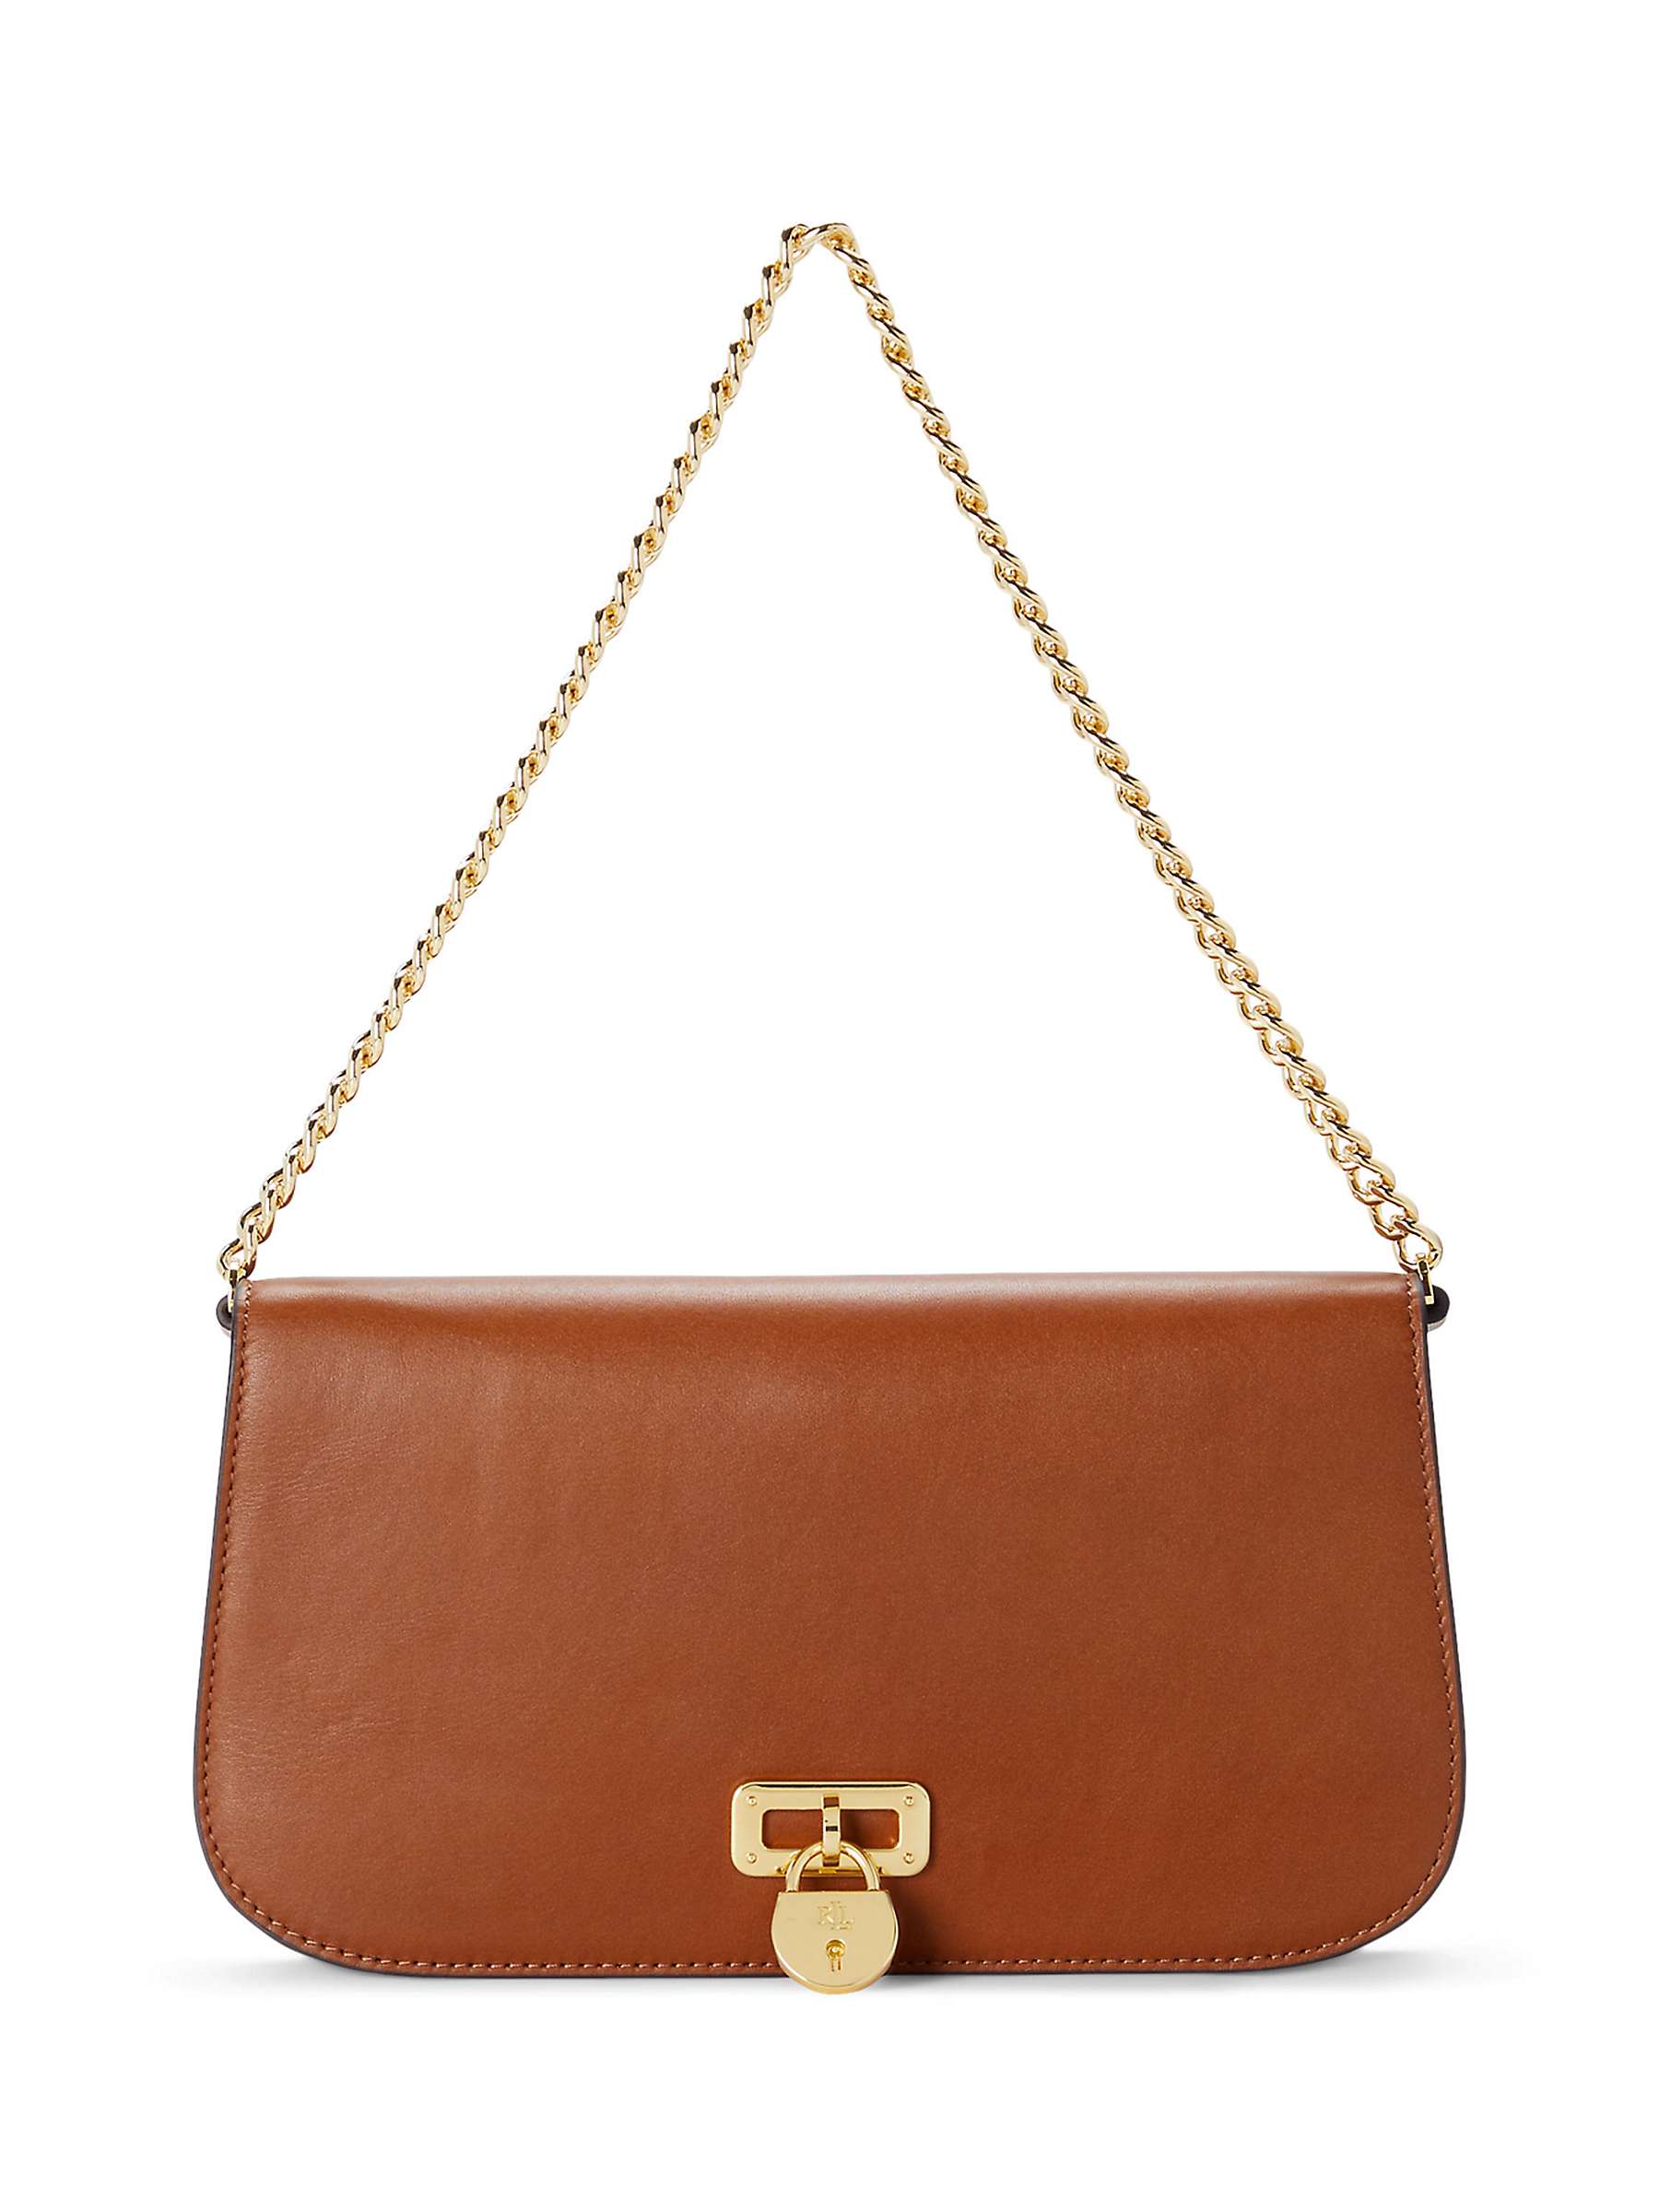 Buy Lauren Ralph Lauren Tanner Leather Shoulder Bag Online at johnlewis.com